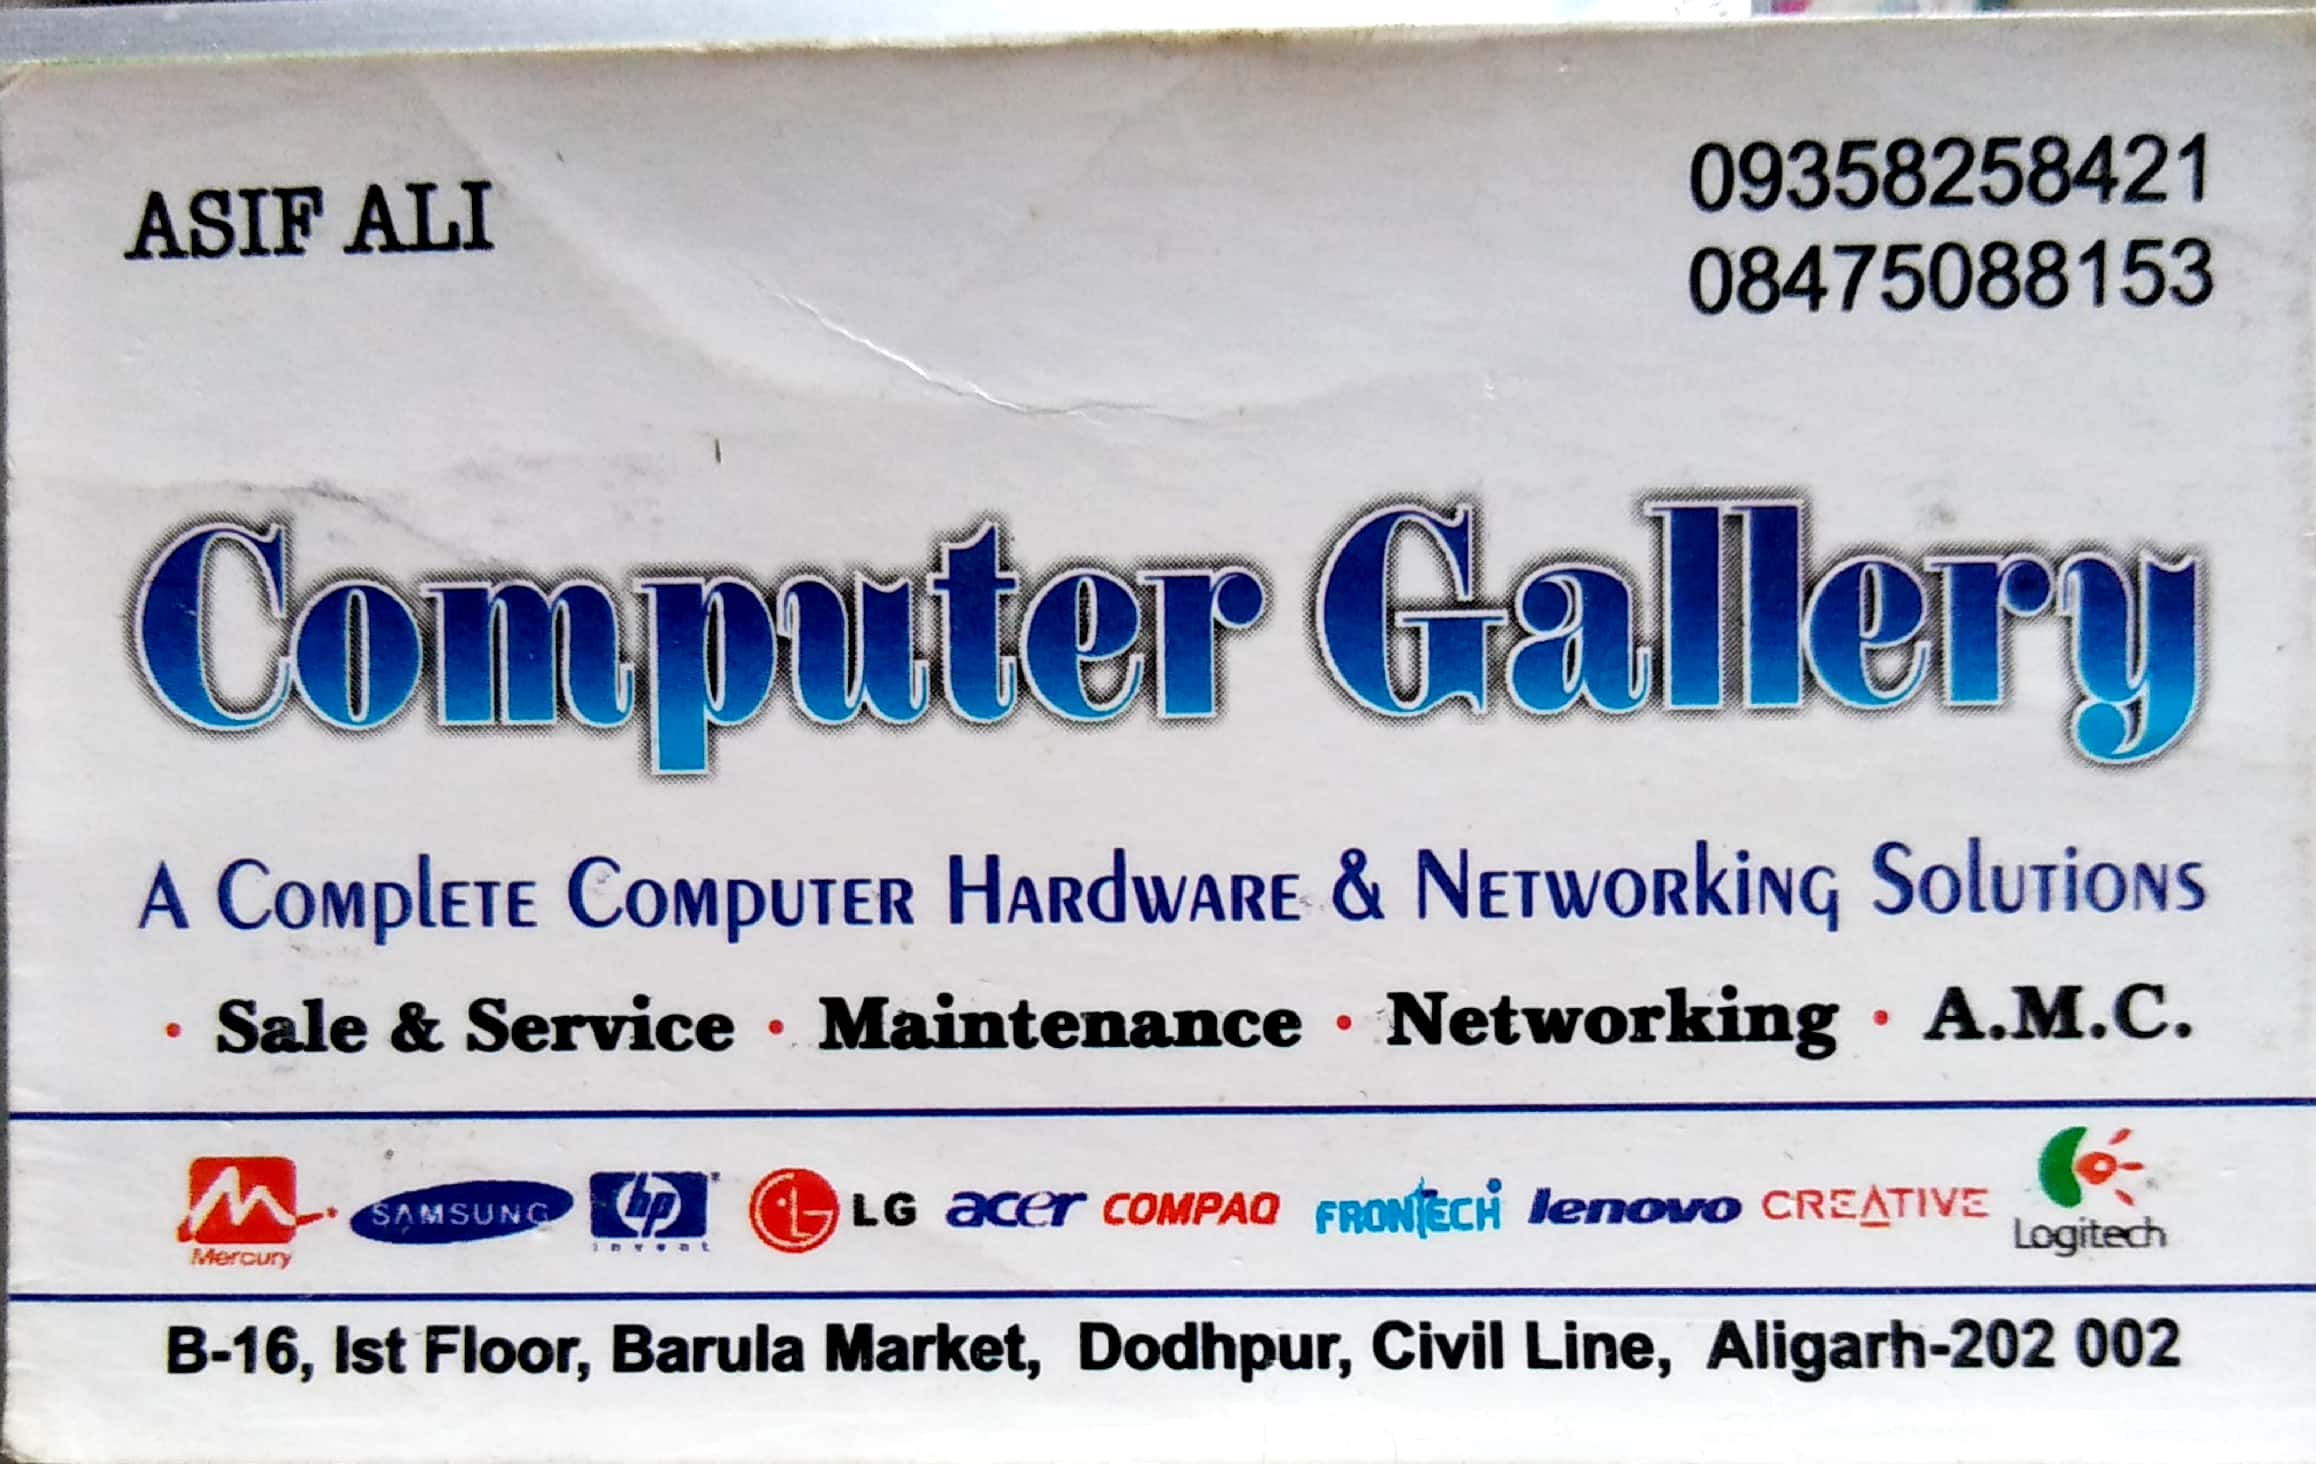 COMPUTER GALLERY��| BEST COMPUTER GALLERY IN ALIGARH FAINS-BAZAAR